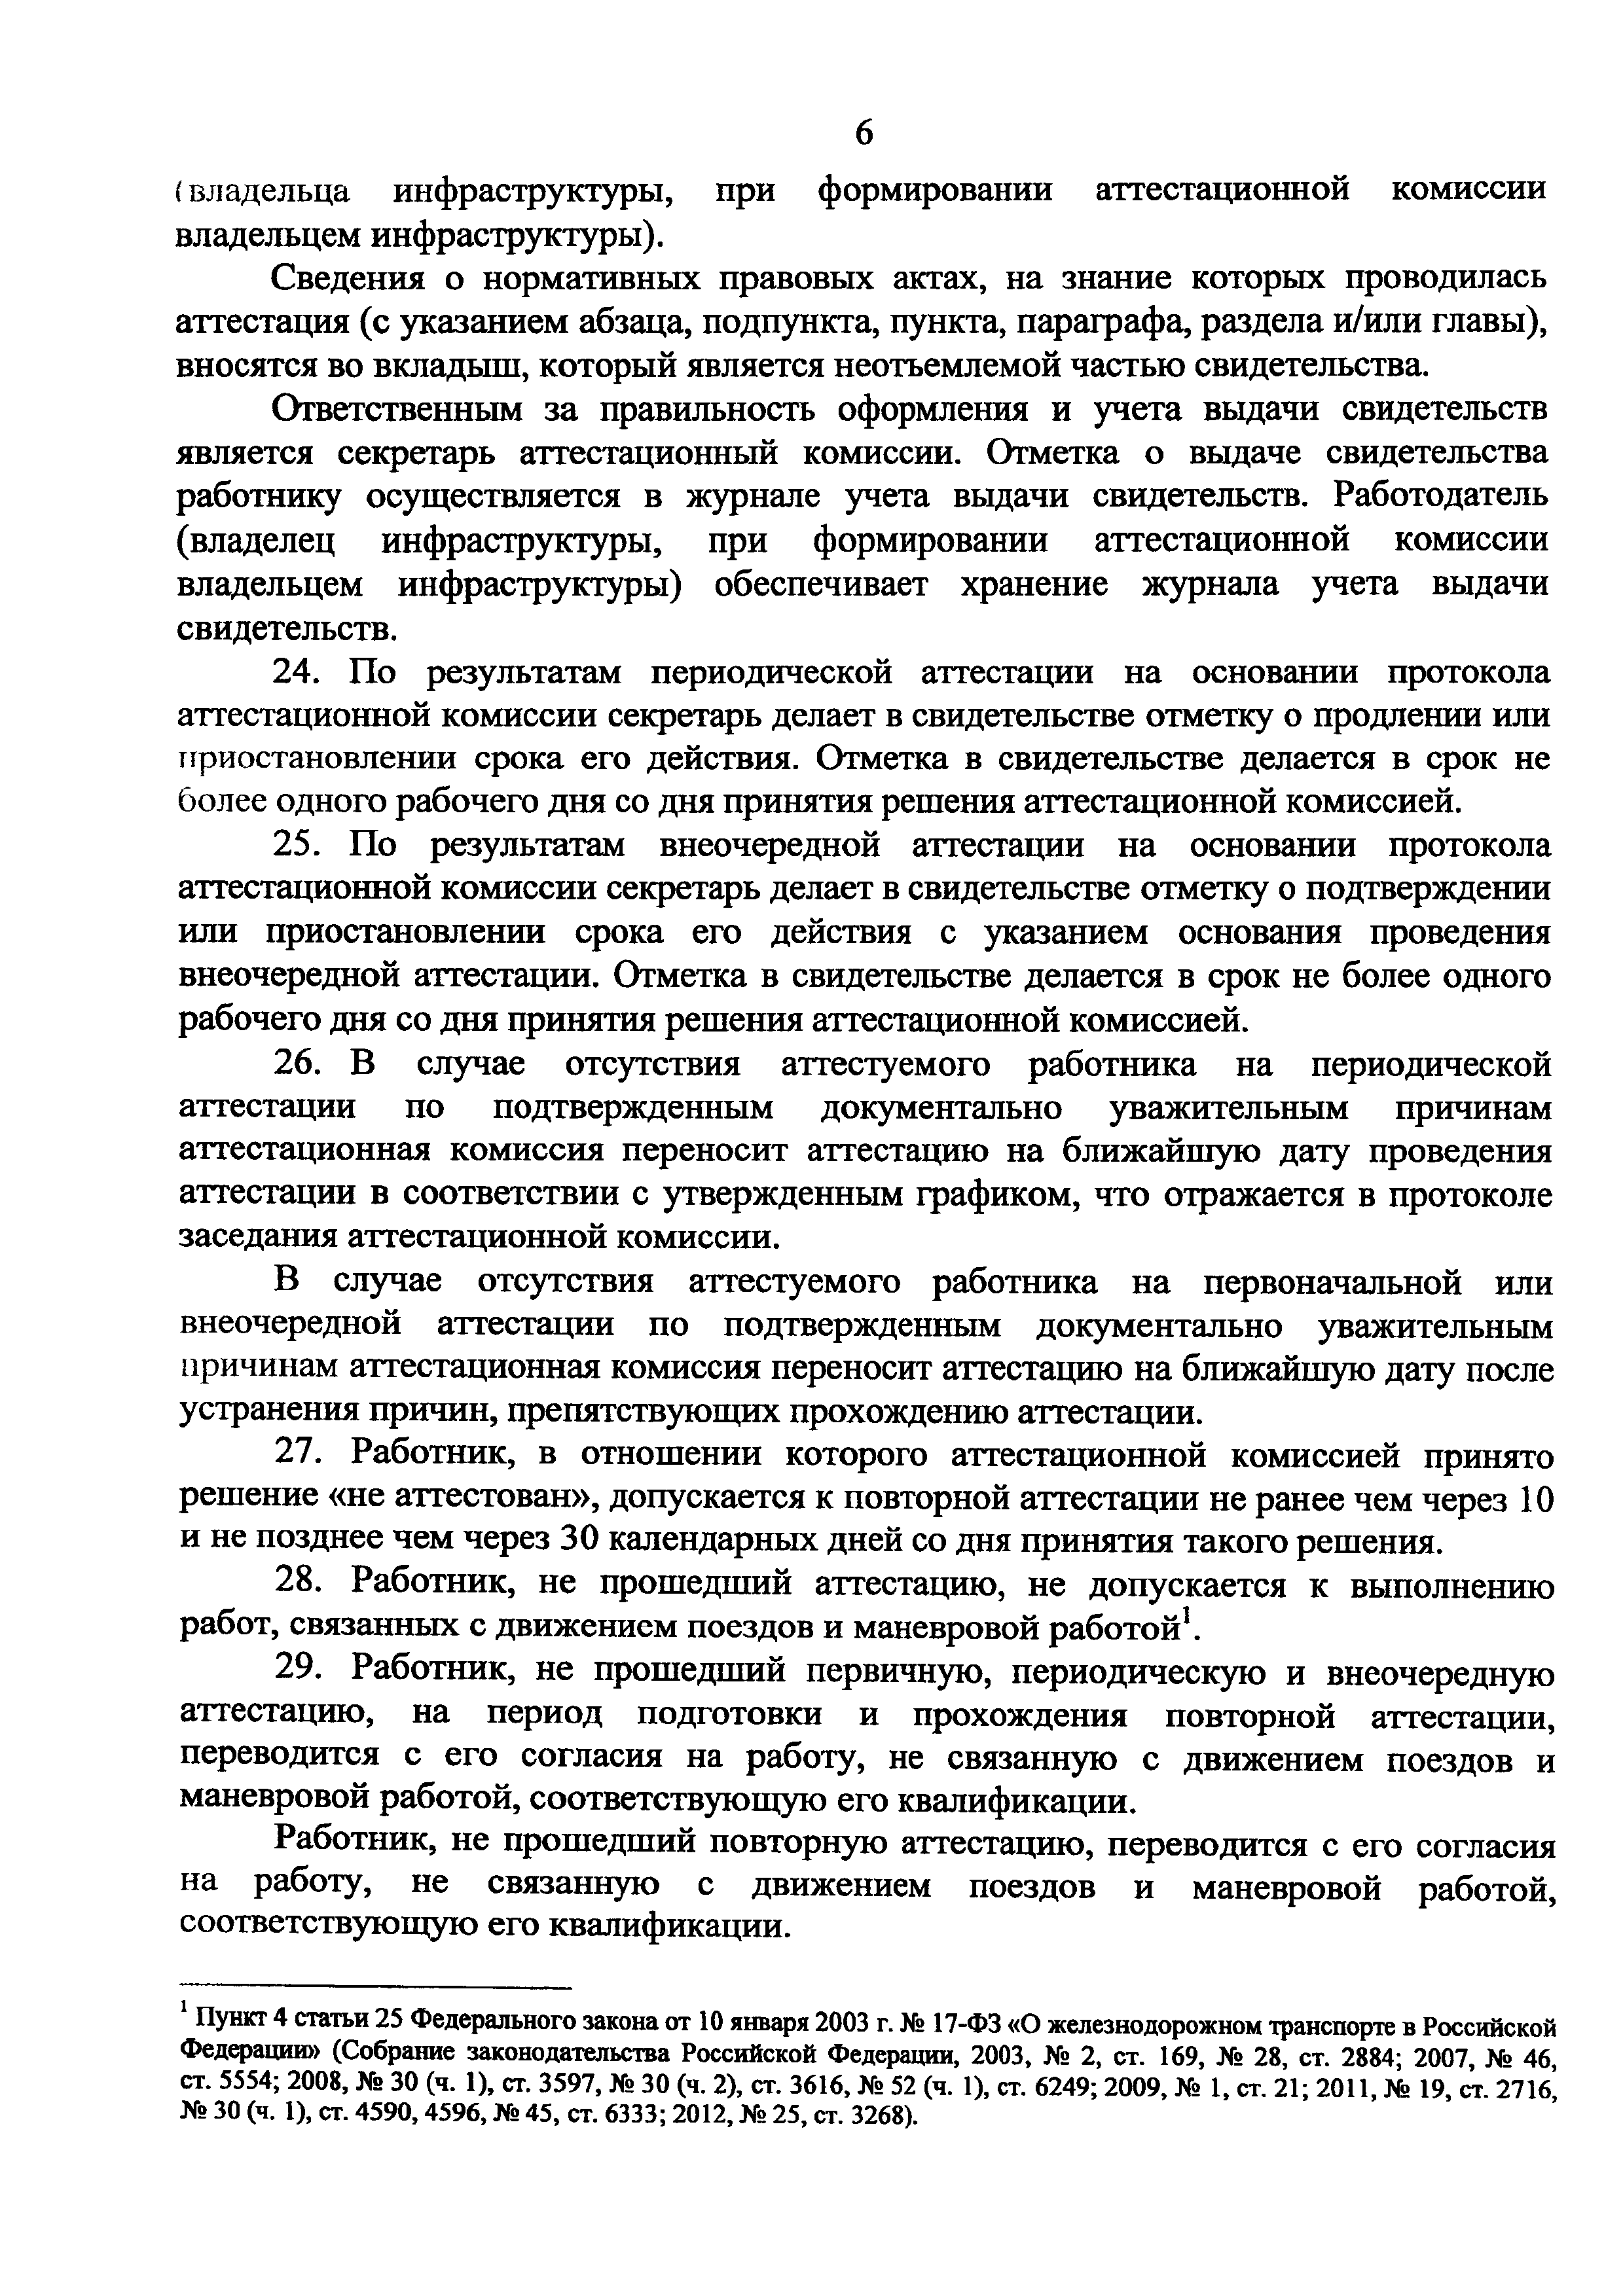 Постановление Госкомтруда СССР, Секретариата ВЦСПС от 06.12.1983 № 283/24-82